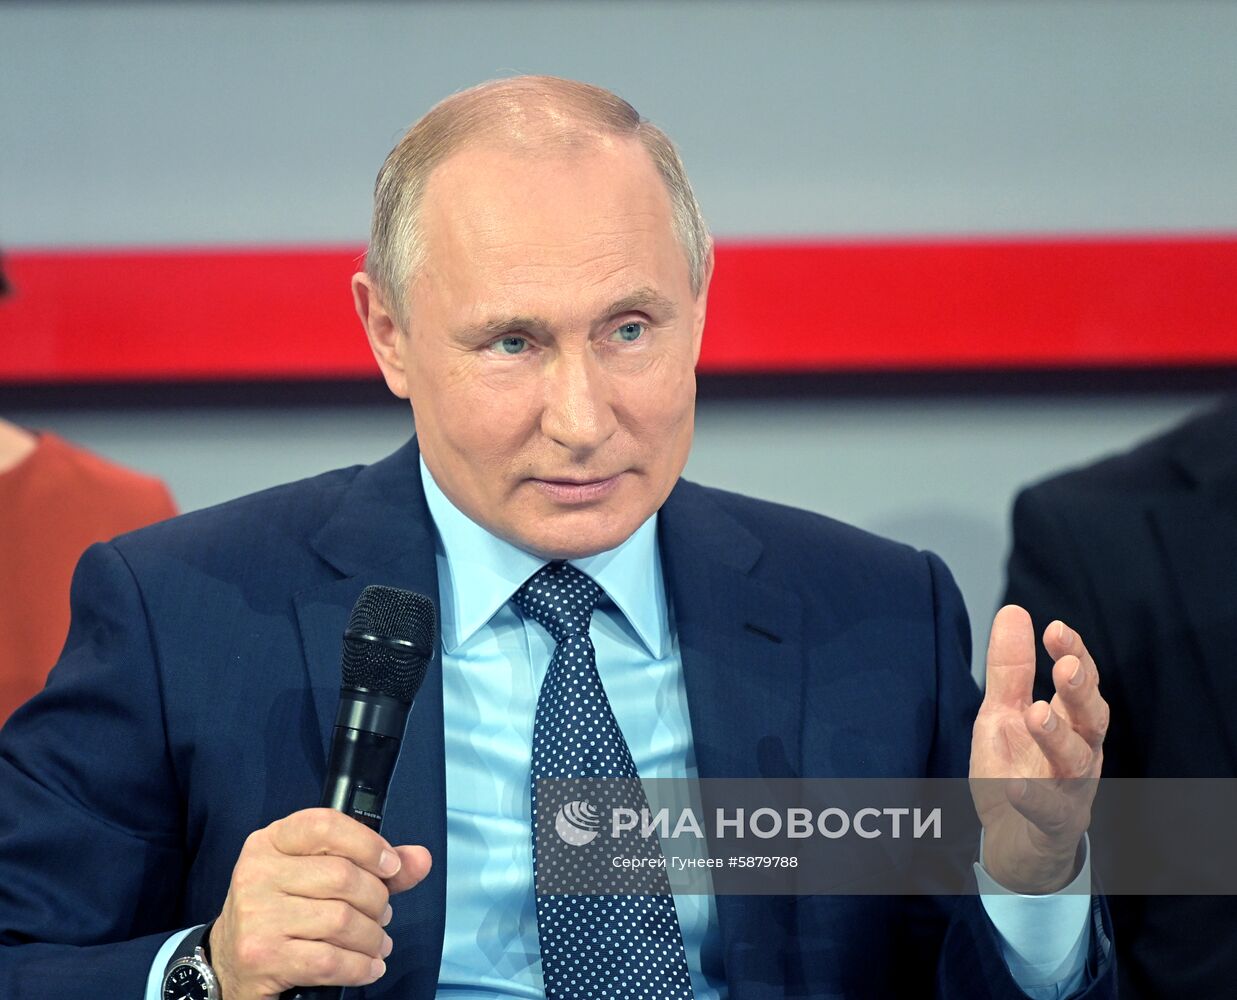 Президент РФ В. Путин посетил медиафорум ОНФ "Правда и справедливость"